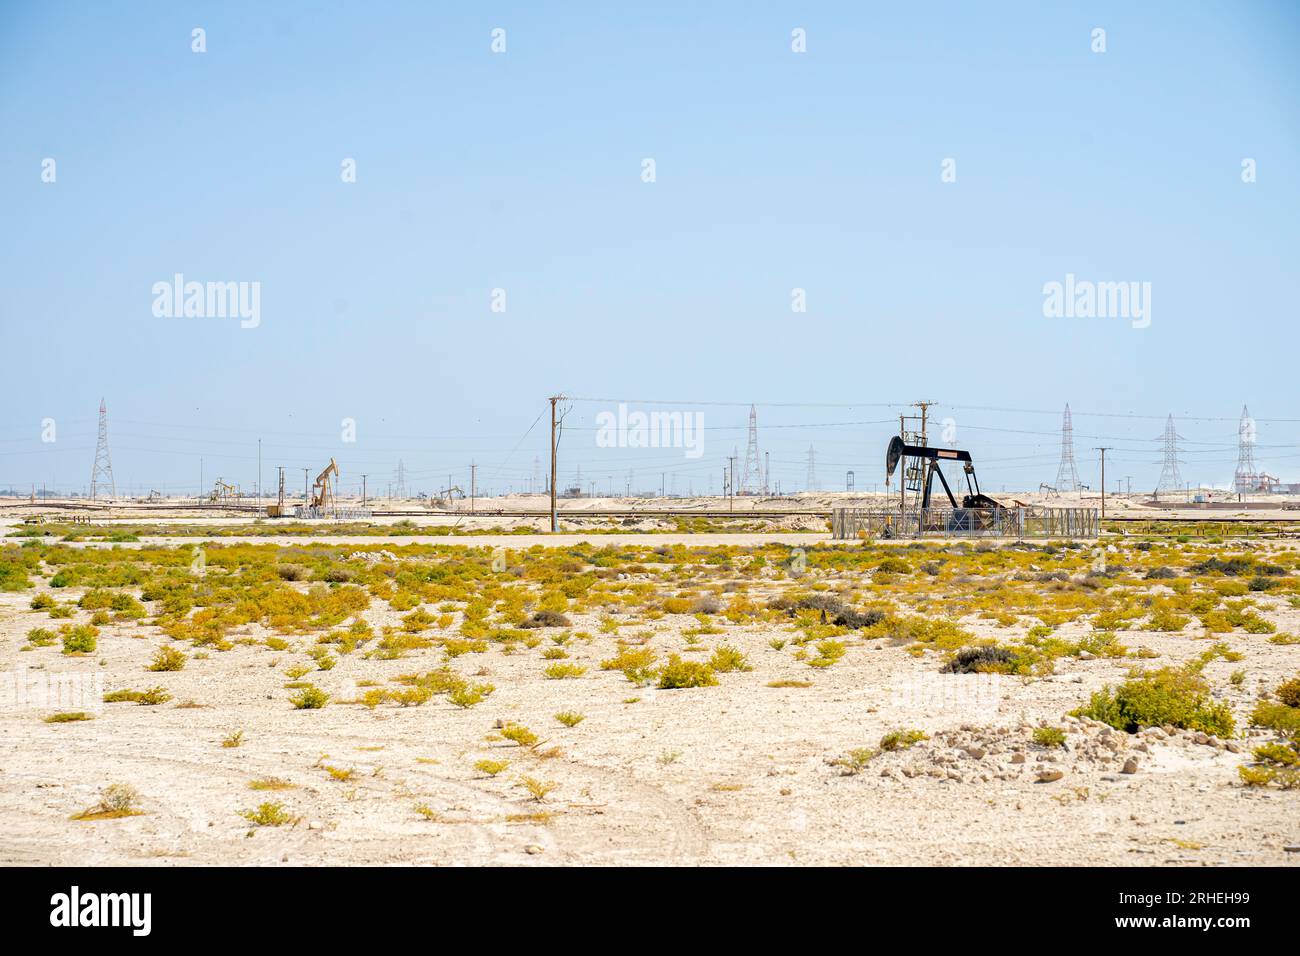 Infrastruktur des Bahrain-Ölfeldes - Pumpenheber, Ölpferd, Ölbock, Strahlpumpe zur Förderung von Rohöl aus der Ölquelle in der Wüste von Bahrain Stockfoto